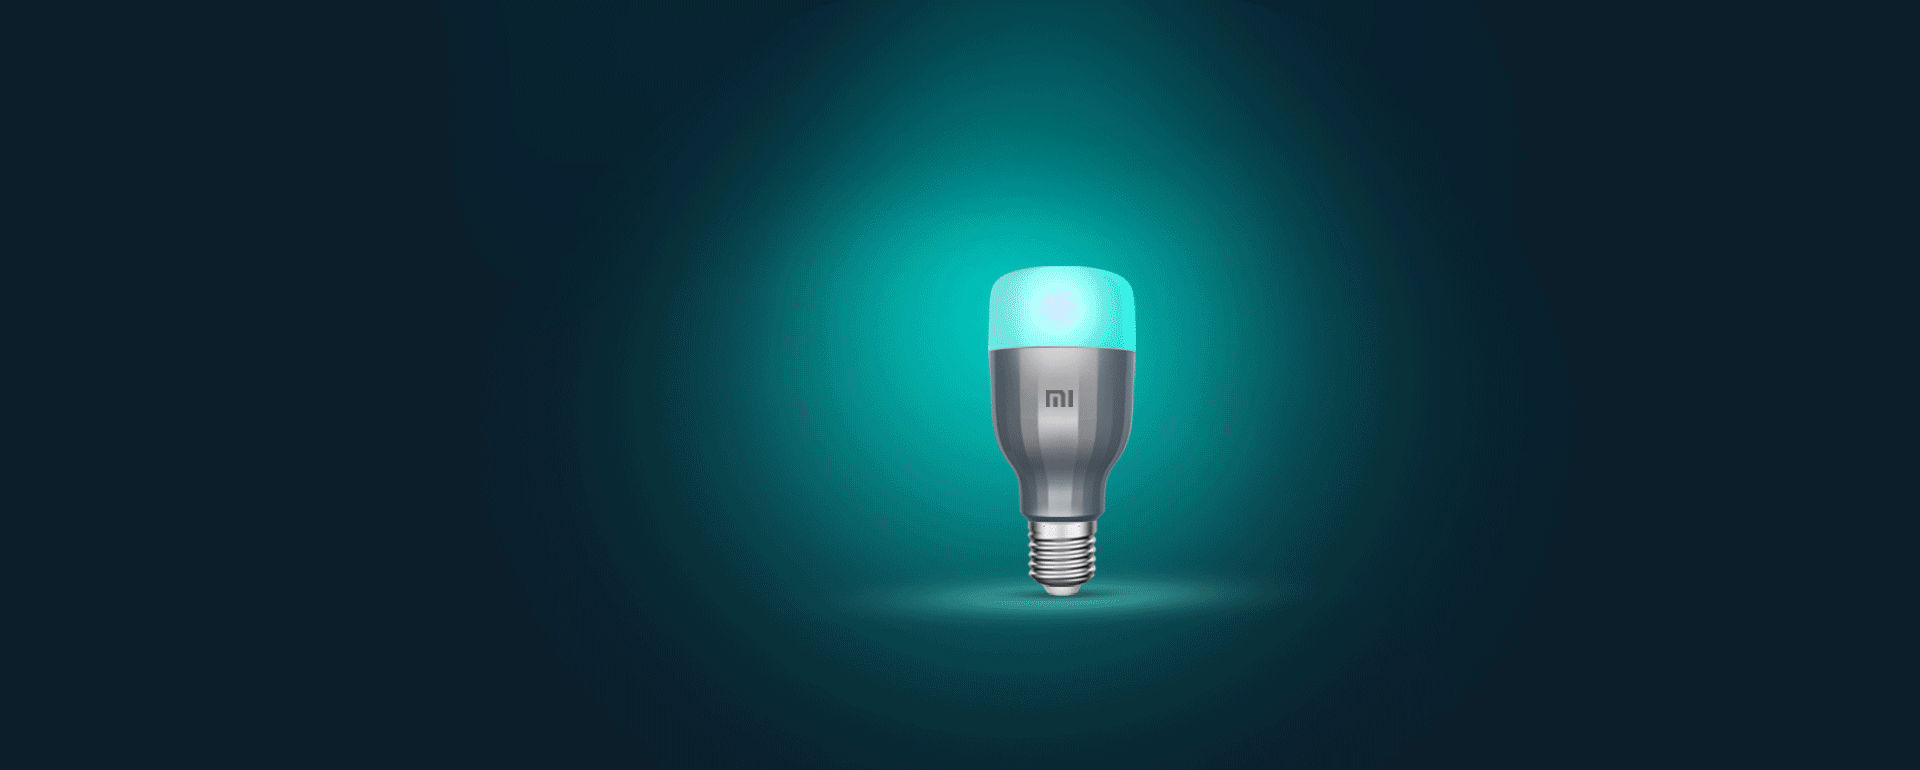 mi smart led bulb